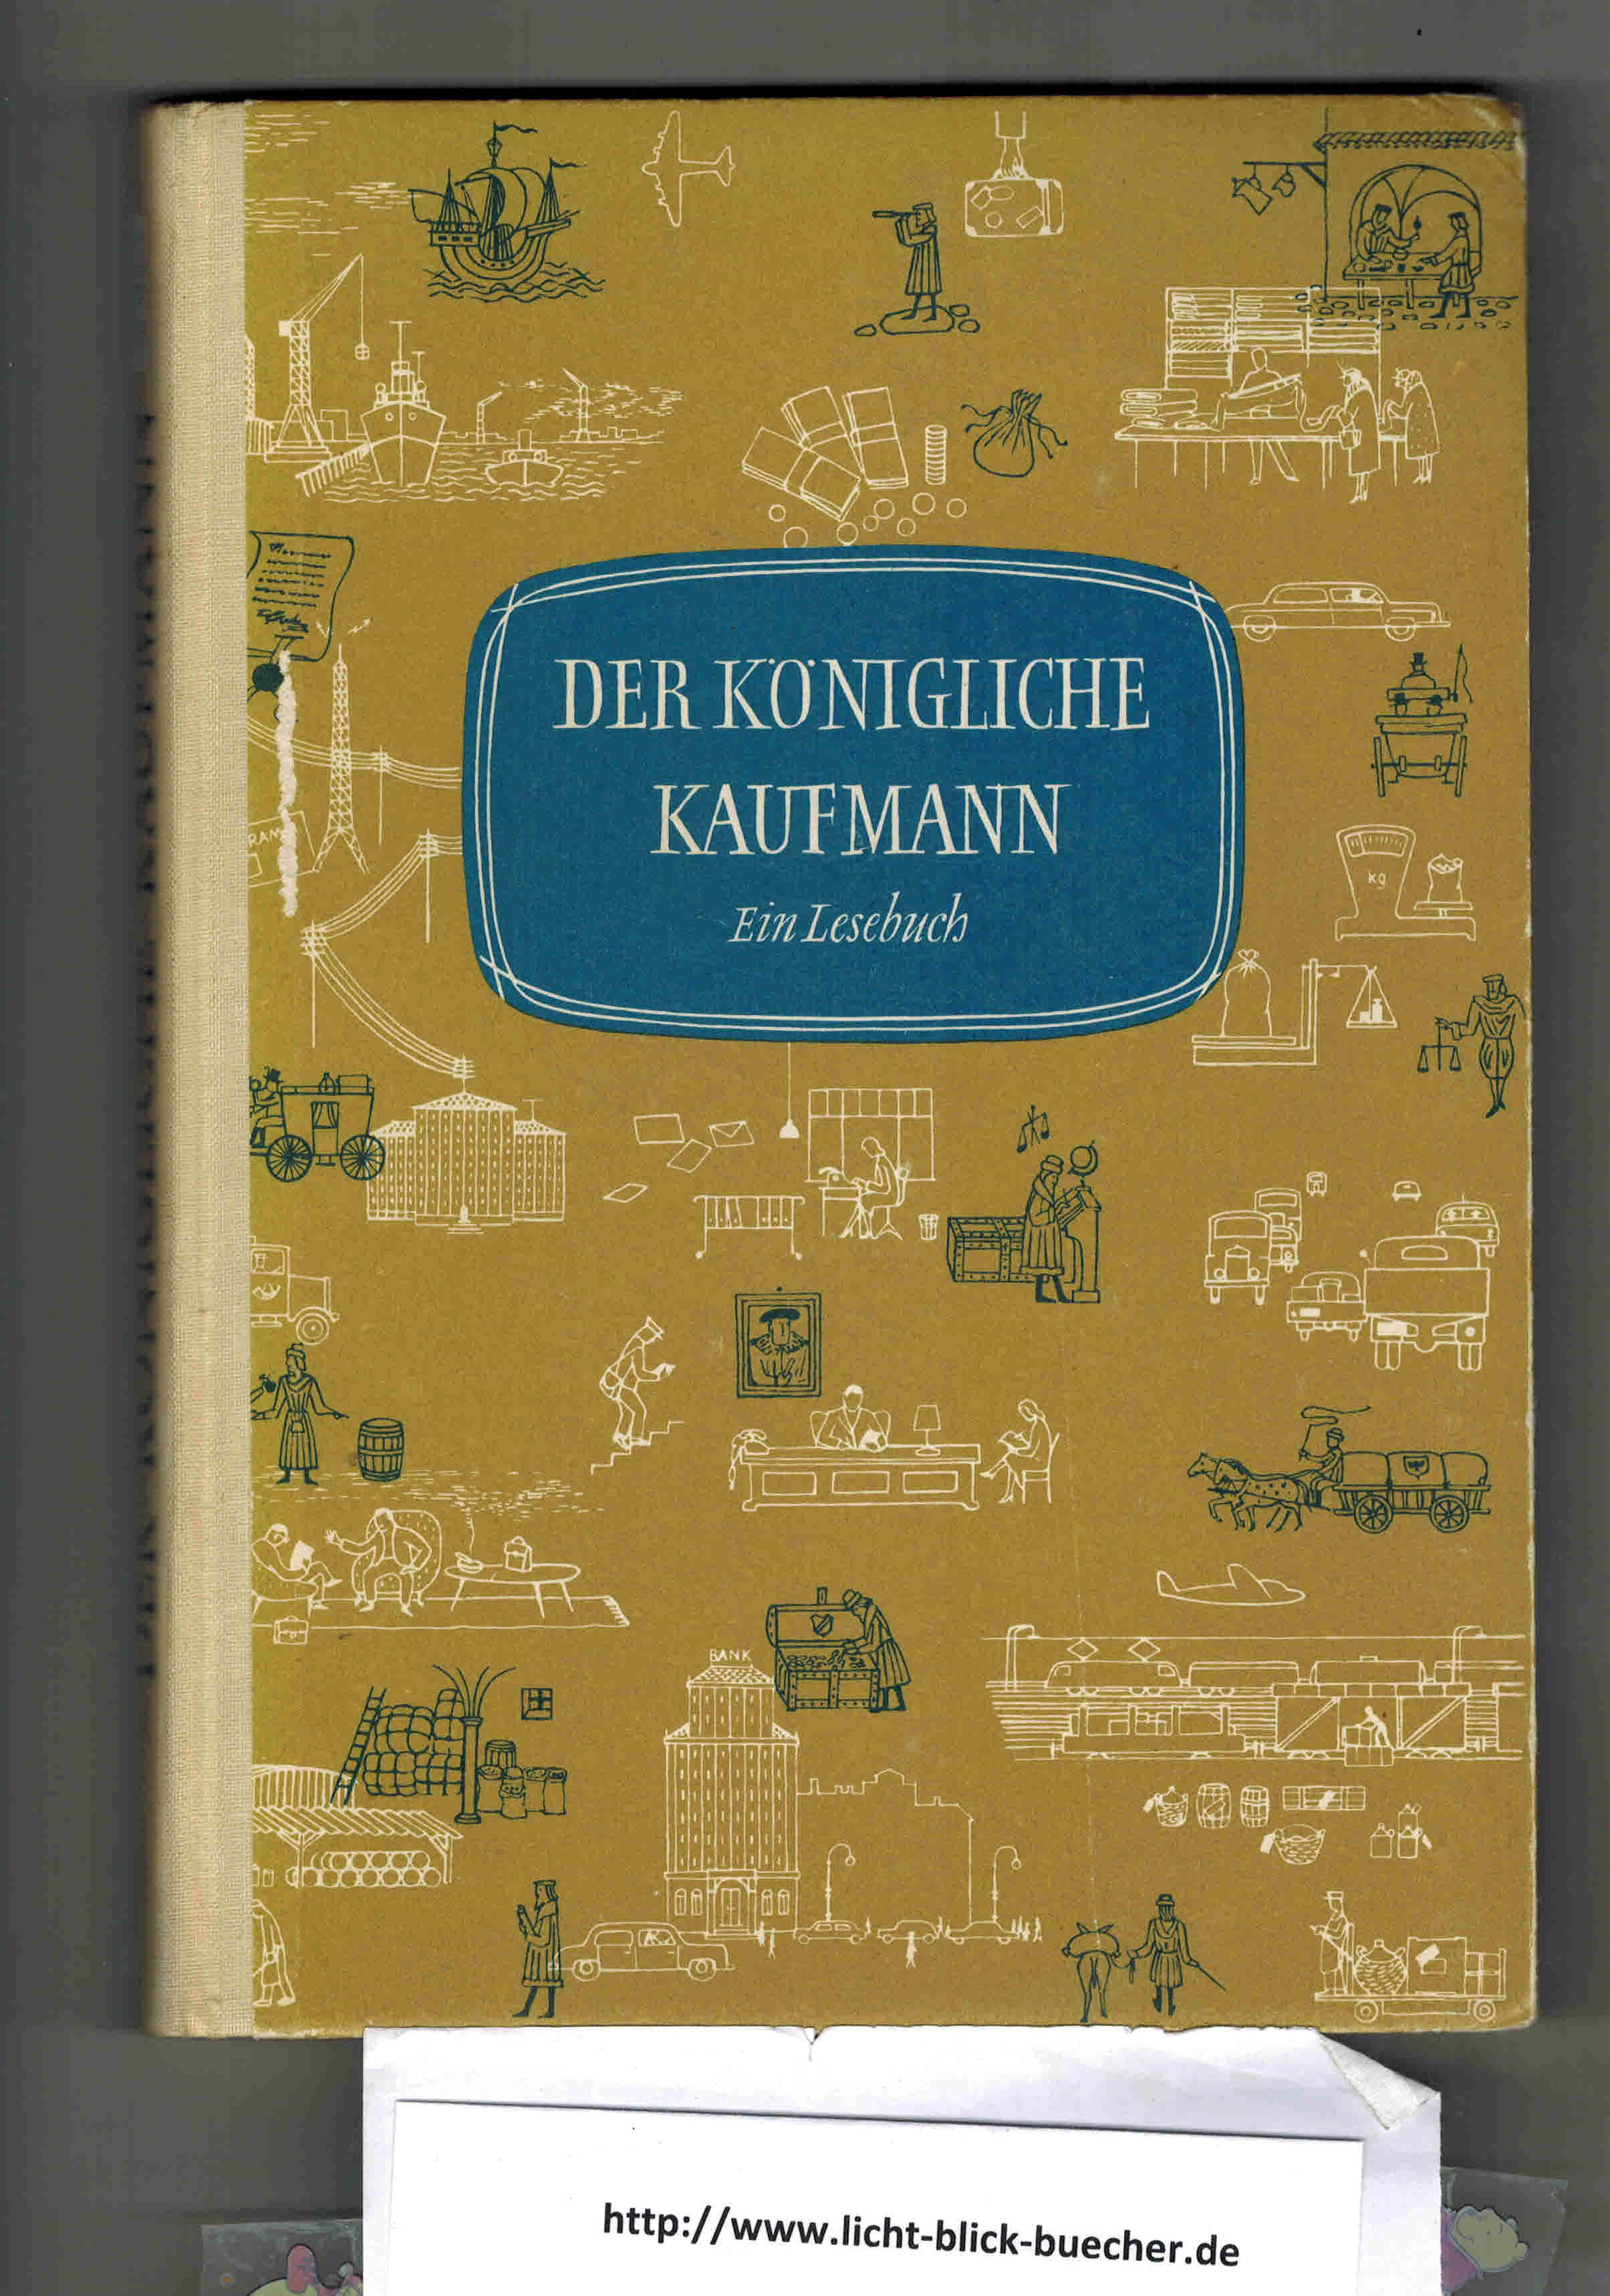 Der koenigliche Kaufmann Ein Lesebuchbearbeitet von Baumer / Butzner / Muehlberger / Sigl / ( Lesebuchwerk fuer Berufsschulen )